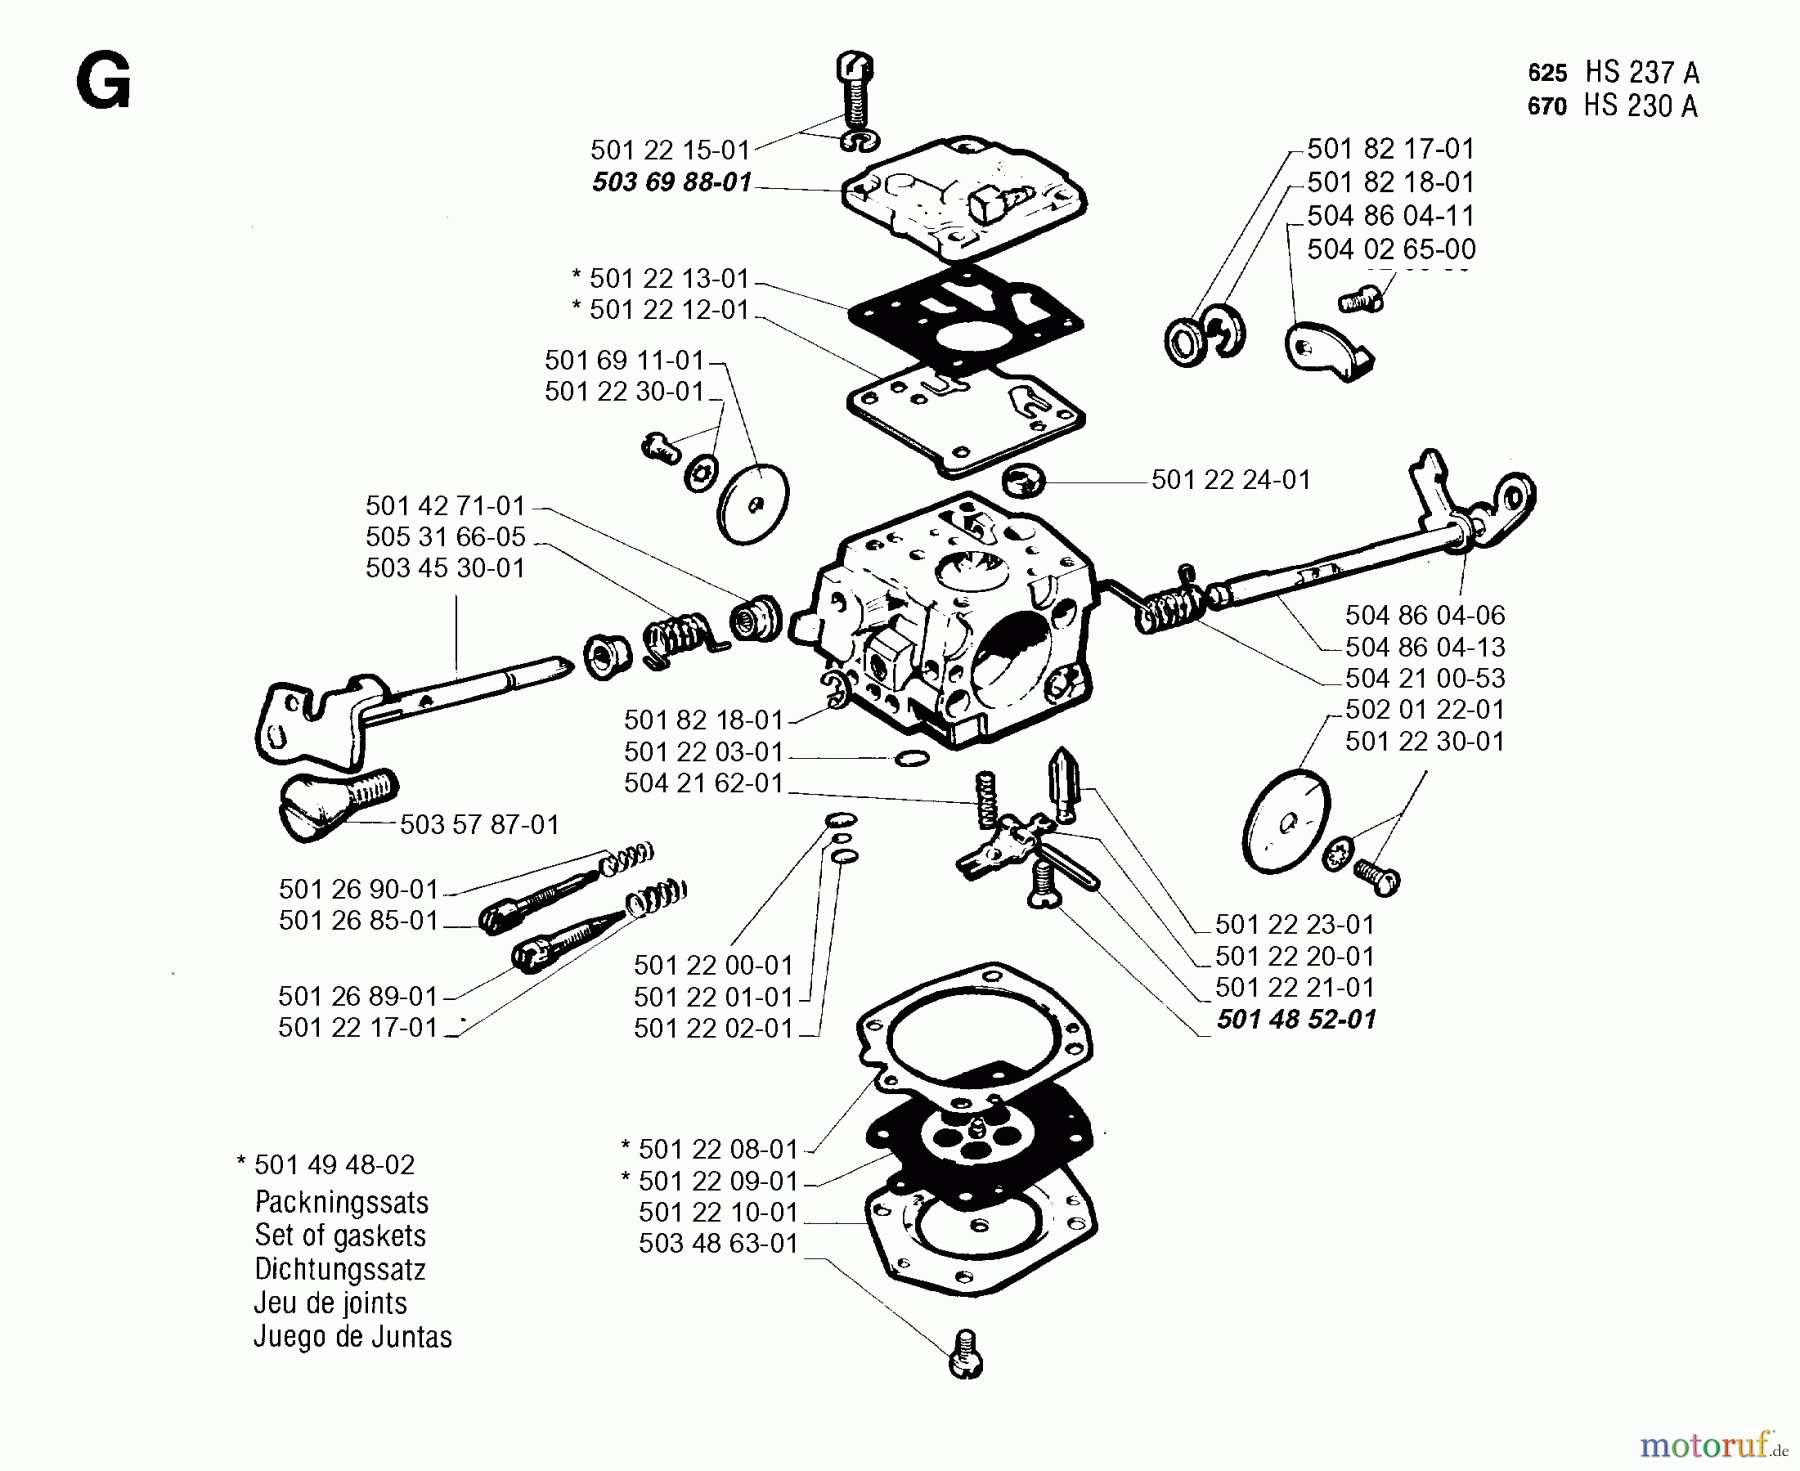  Jonsered Motorsägen 625 - Jonsered Chainsaw (1993-06) CARBURETOR DETAILS